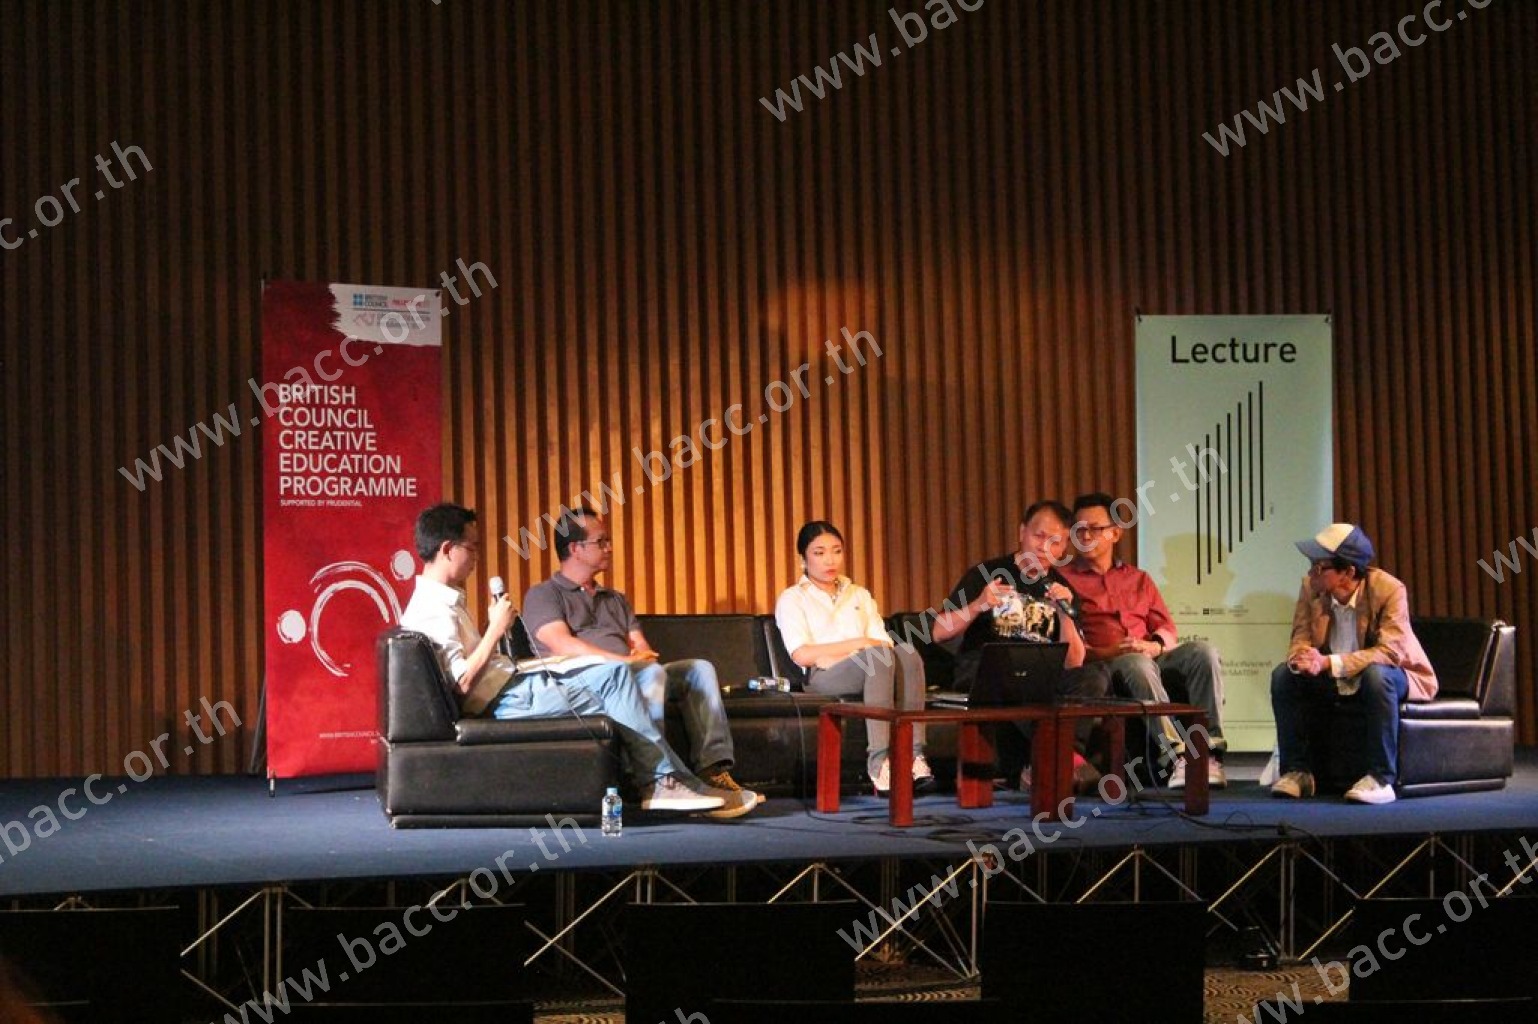 กิจกรรมการศึกษานิทรรศการ “ไทยเนตร” : Artist Forum #1 : “ศิลปินไทยในเวทีนานาชาติ : กรณีศึกษาหอศิลป์ร่วมสมัย Saatchi”